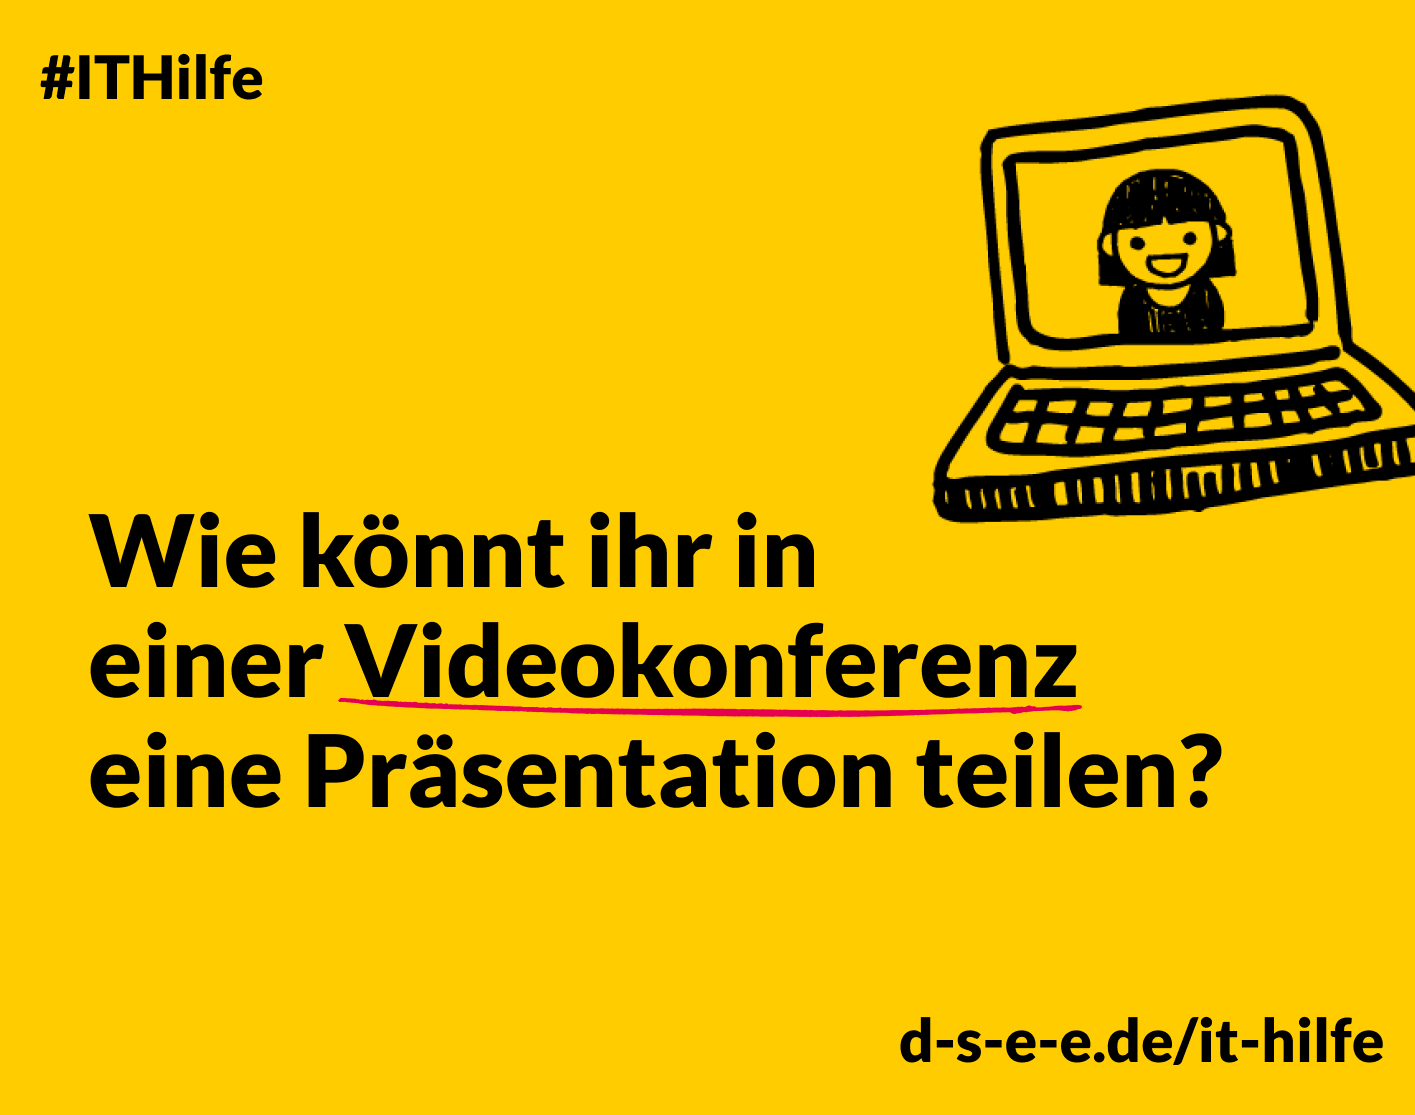 Grafik mit einem Laptop und dem Text: #IT-Hilfe, Wie könnt ihr in einer Videokonferenz eine Präsentation teilen? d-s-e-e/it-hilfe